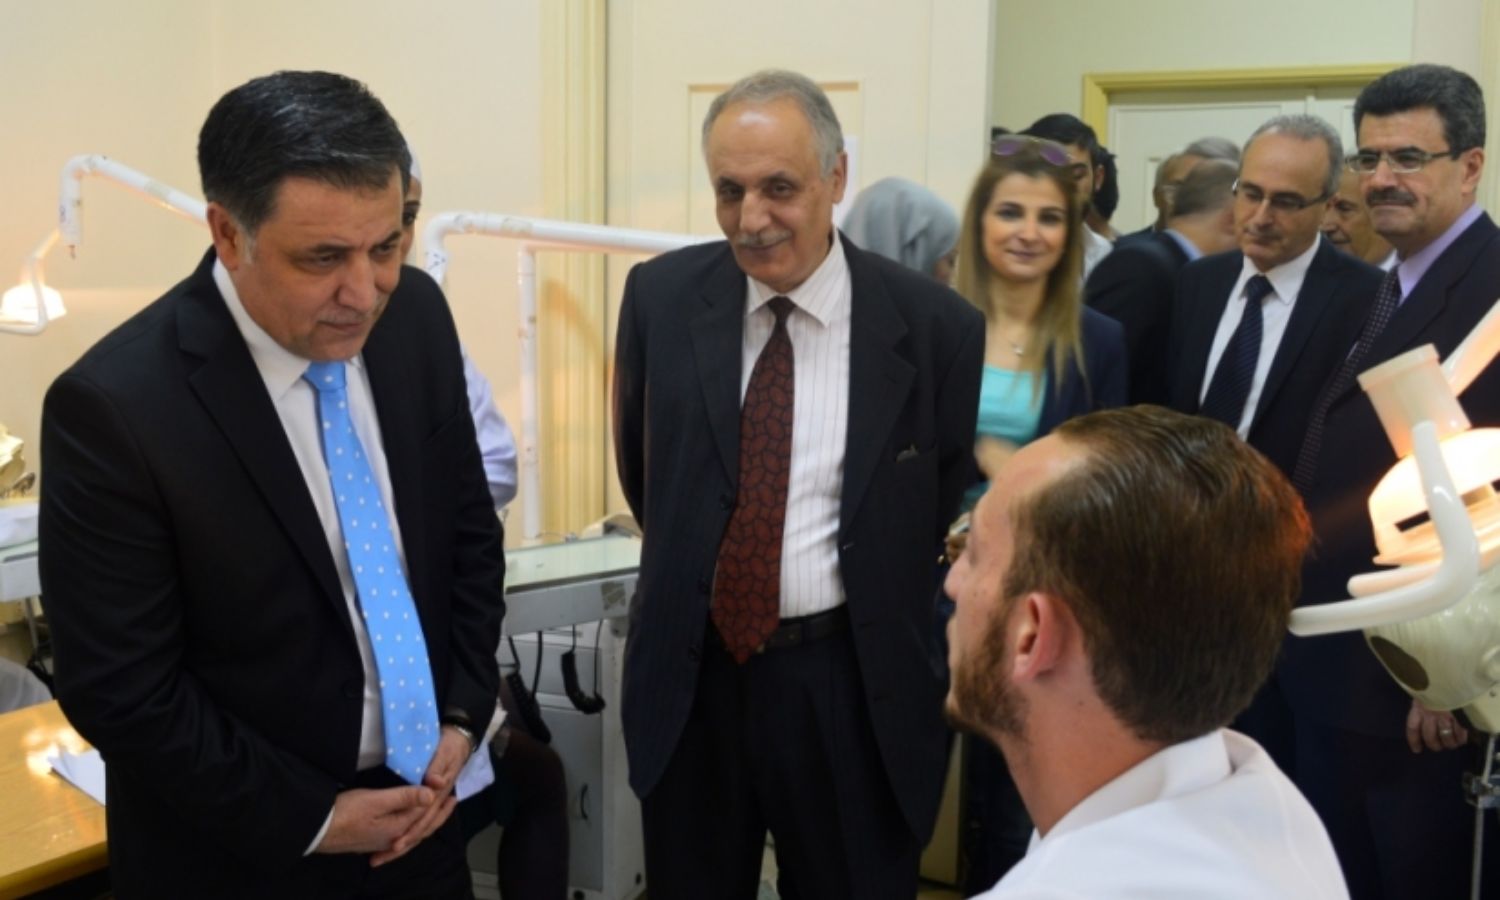 وزير التعليم العالي حينها (وزير التربية الجديد) محمد عامر مارديني يفتتح مبنى كلية طب الأسنان في الجامعة السورية الخاصة- تشرين الأول 2015 (الجامعة السورية الخاصة)